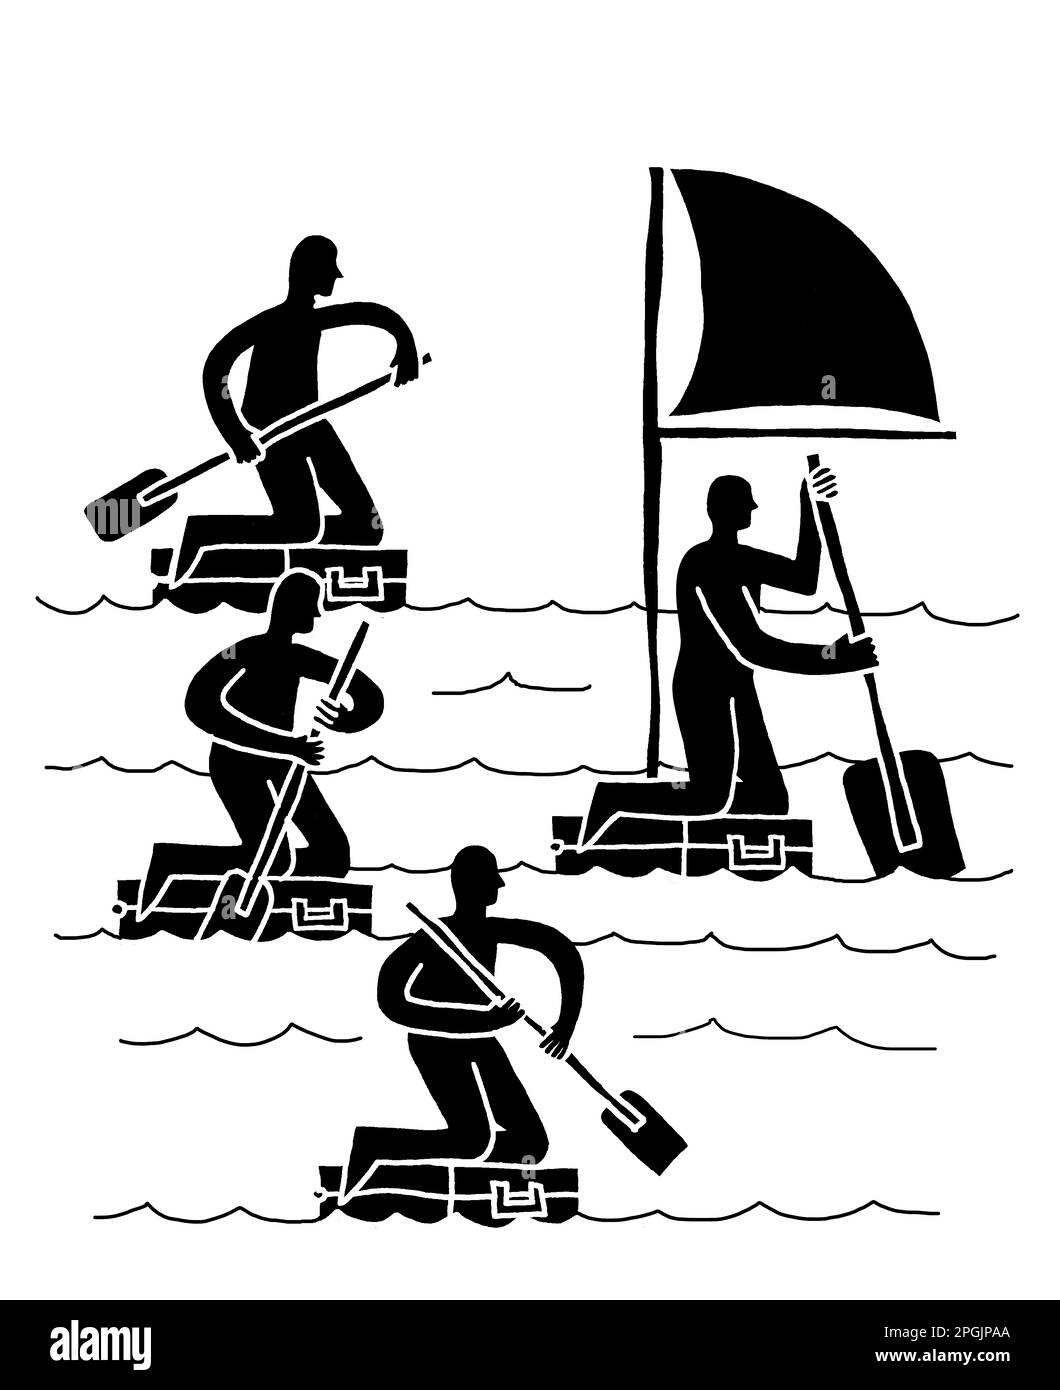 Illustrazione in bianco e nero di quattro uomini che usano le valigette come barche a remi, con quella sul davanti con una vela Foto Stock